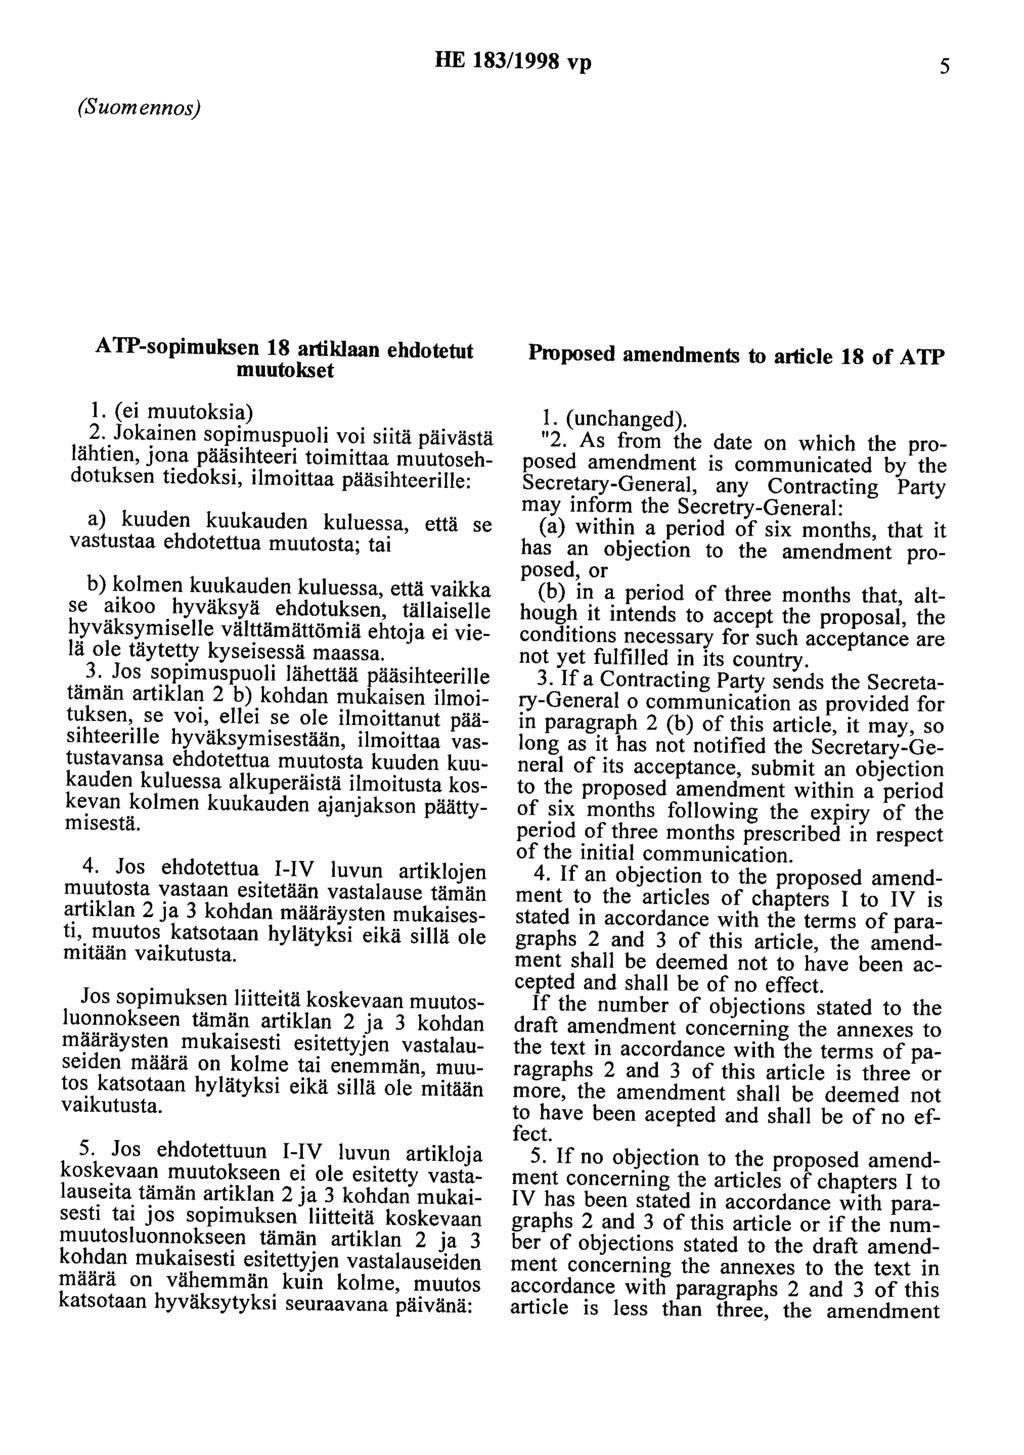 HE 183/1998 vp 5 (Suomennos) A TP-sopimuksen 18 artiklaan ehdotetut muutokset 1. (ei muutoksia) 2.